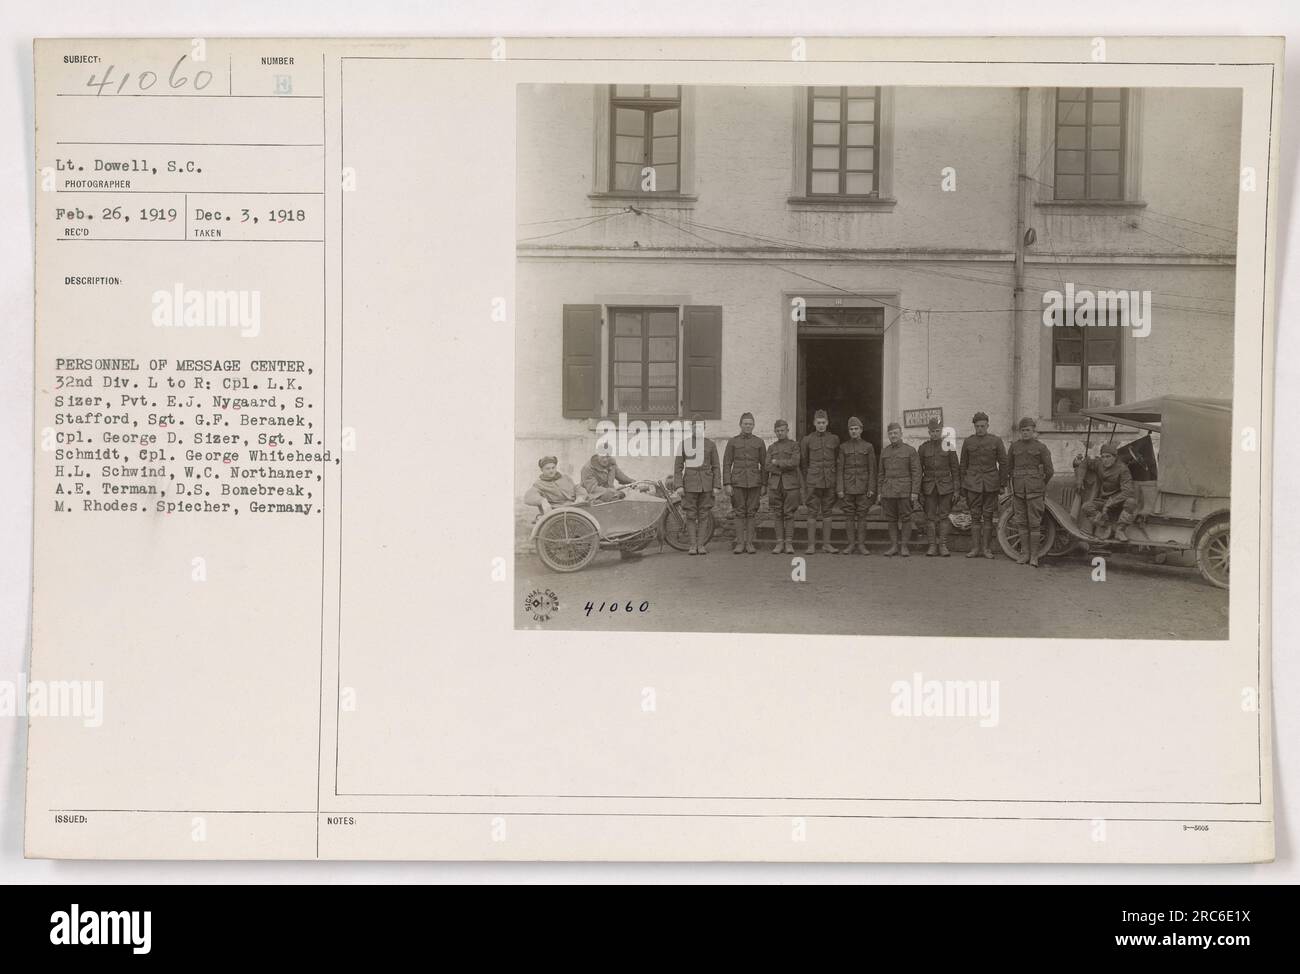 Amerikanisches Militär des Nachrichtenzentrums, 32. Division, in Spiecher, Deutschland. Das Foto wurde von LT. Dowell am 26. Februar 1919 aufgenommen. Das Personal auf dem Foto, von links nach rechts, ist CPL. L.K. Sizer, Pvt. E.J. Nygaard, S. Stafford, Sergeant G.F. Beranek, CPL. George D. Sizer, Sgt. N. Schmidt, CPL. George Whitehead, H.L. Schwind, W.C. Northaner, A.E. Terman, D.S. Bonebreak, M. Rhodes. Das Foto wurde mit der Nummer 41060 ausgestellt. Stockfoto